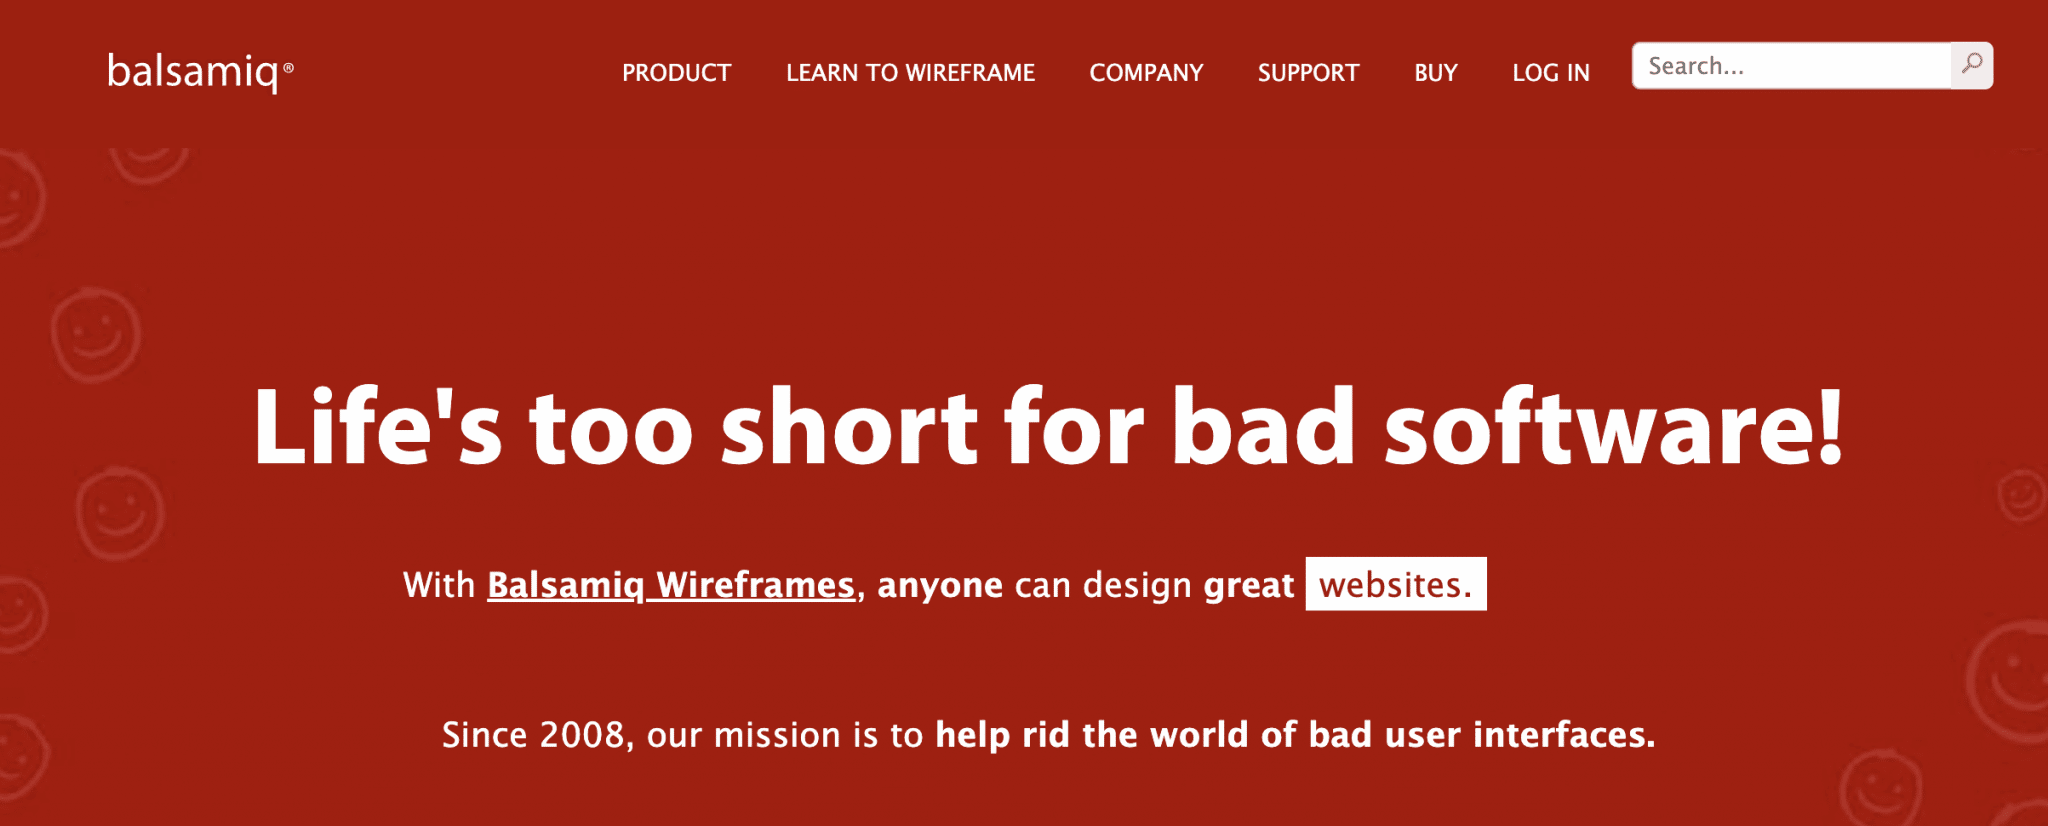 Balsamiq est un outil permettant de créer des wireframes pour votre site WordPress.